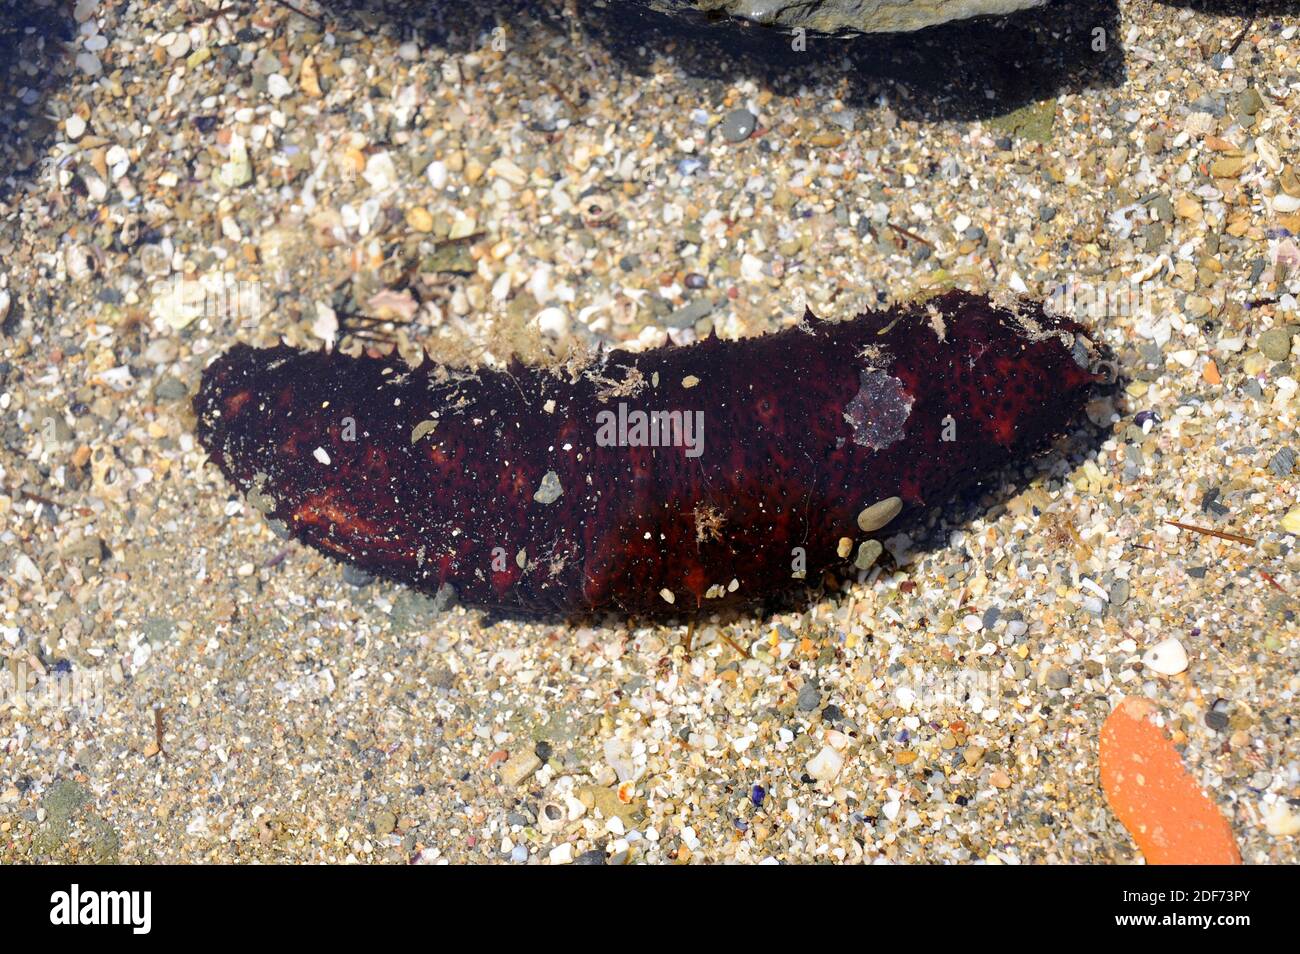 El pepino tubular (Holothuria tubulosa) es una especie de pepino de mar que se alimenta de detritus y plancton. Esta foto fue tomada en Cap Creus, Girona Foto de stock